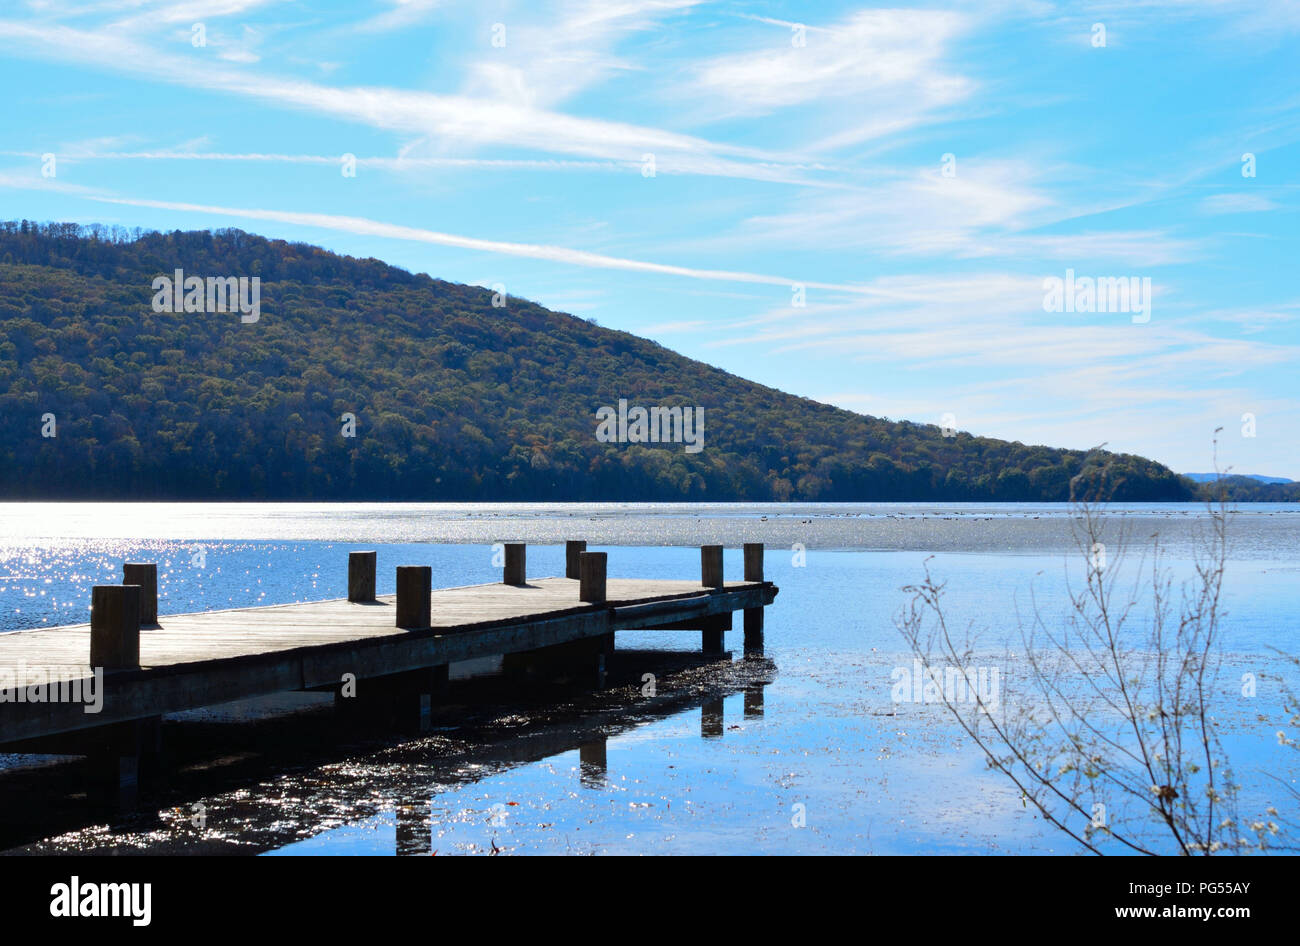 Holz dock Verlängerung über den See Wasser. Wunderschöne, ruhige und gelassene Bilder Bild von hölzernen Pier mit blauem Wasser und blauem Himmel, die fernen Hügel im Hintergrund. Stockfoto